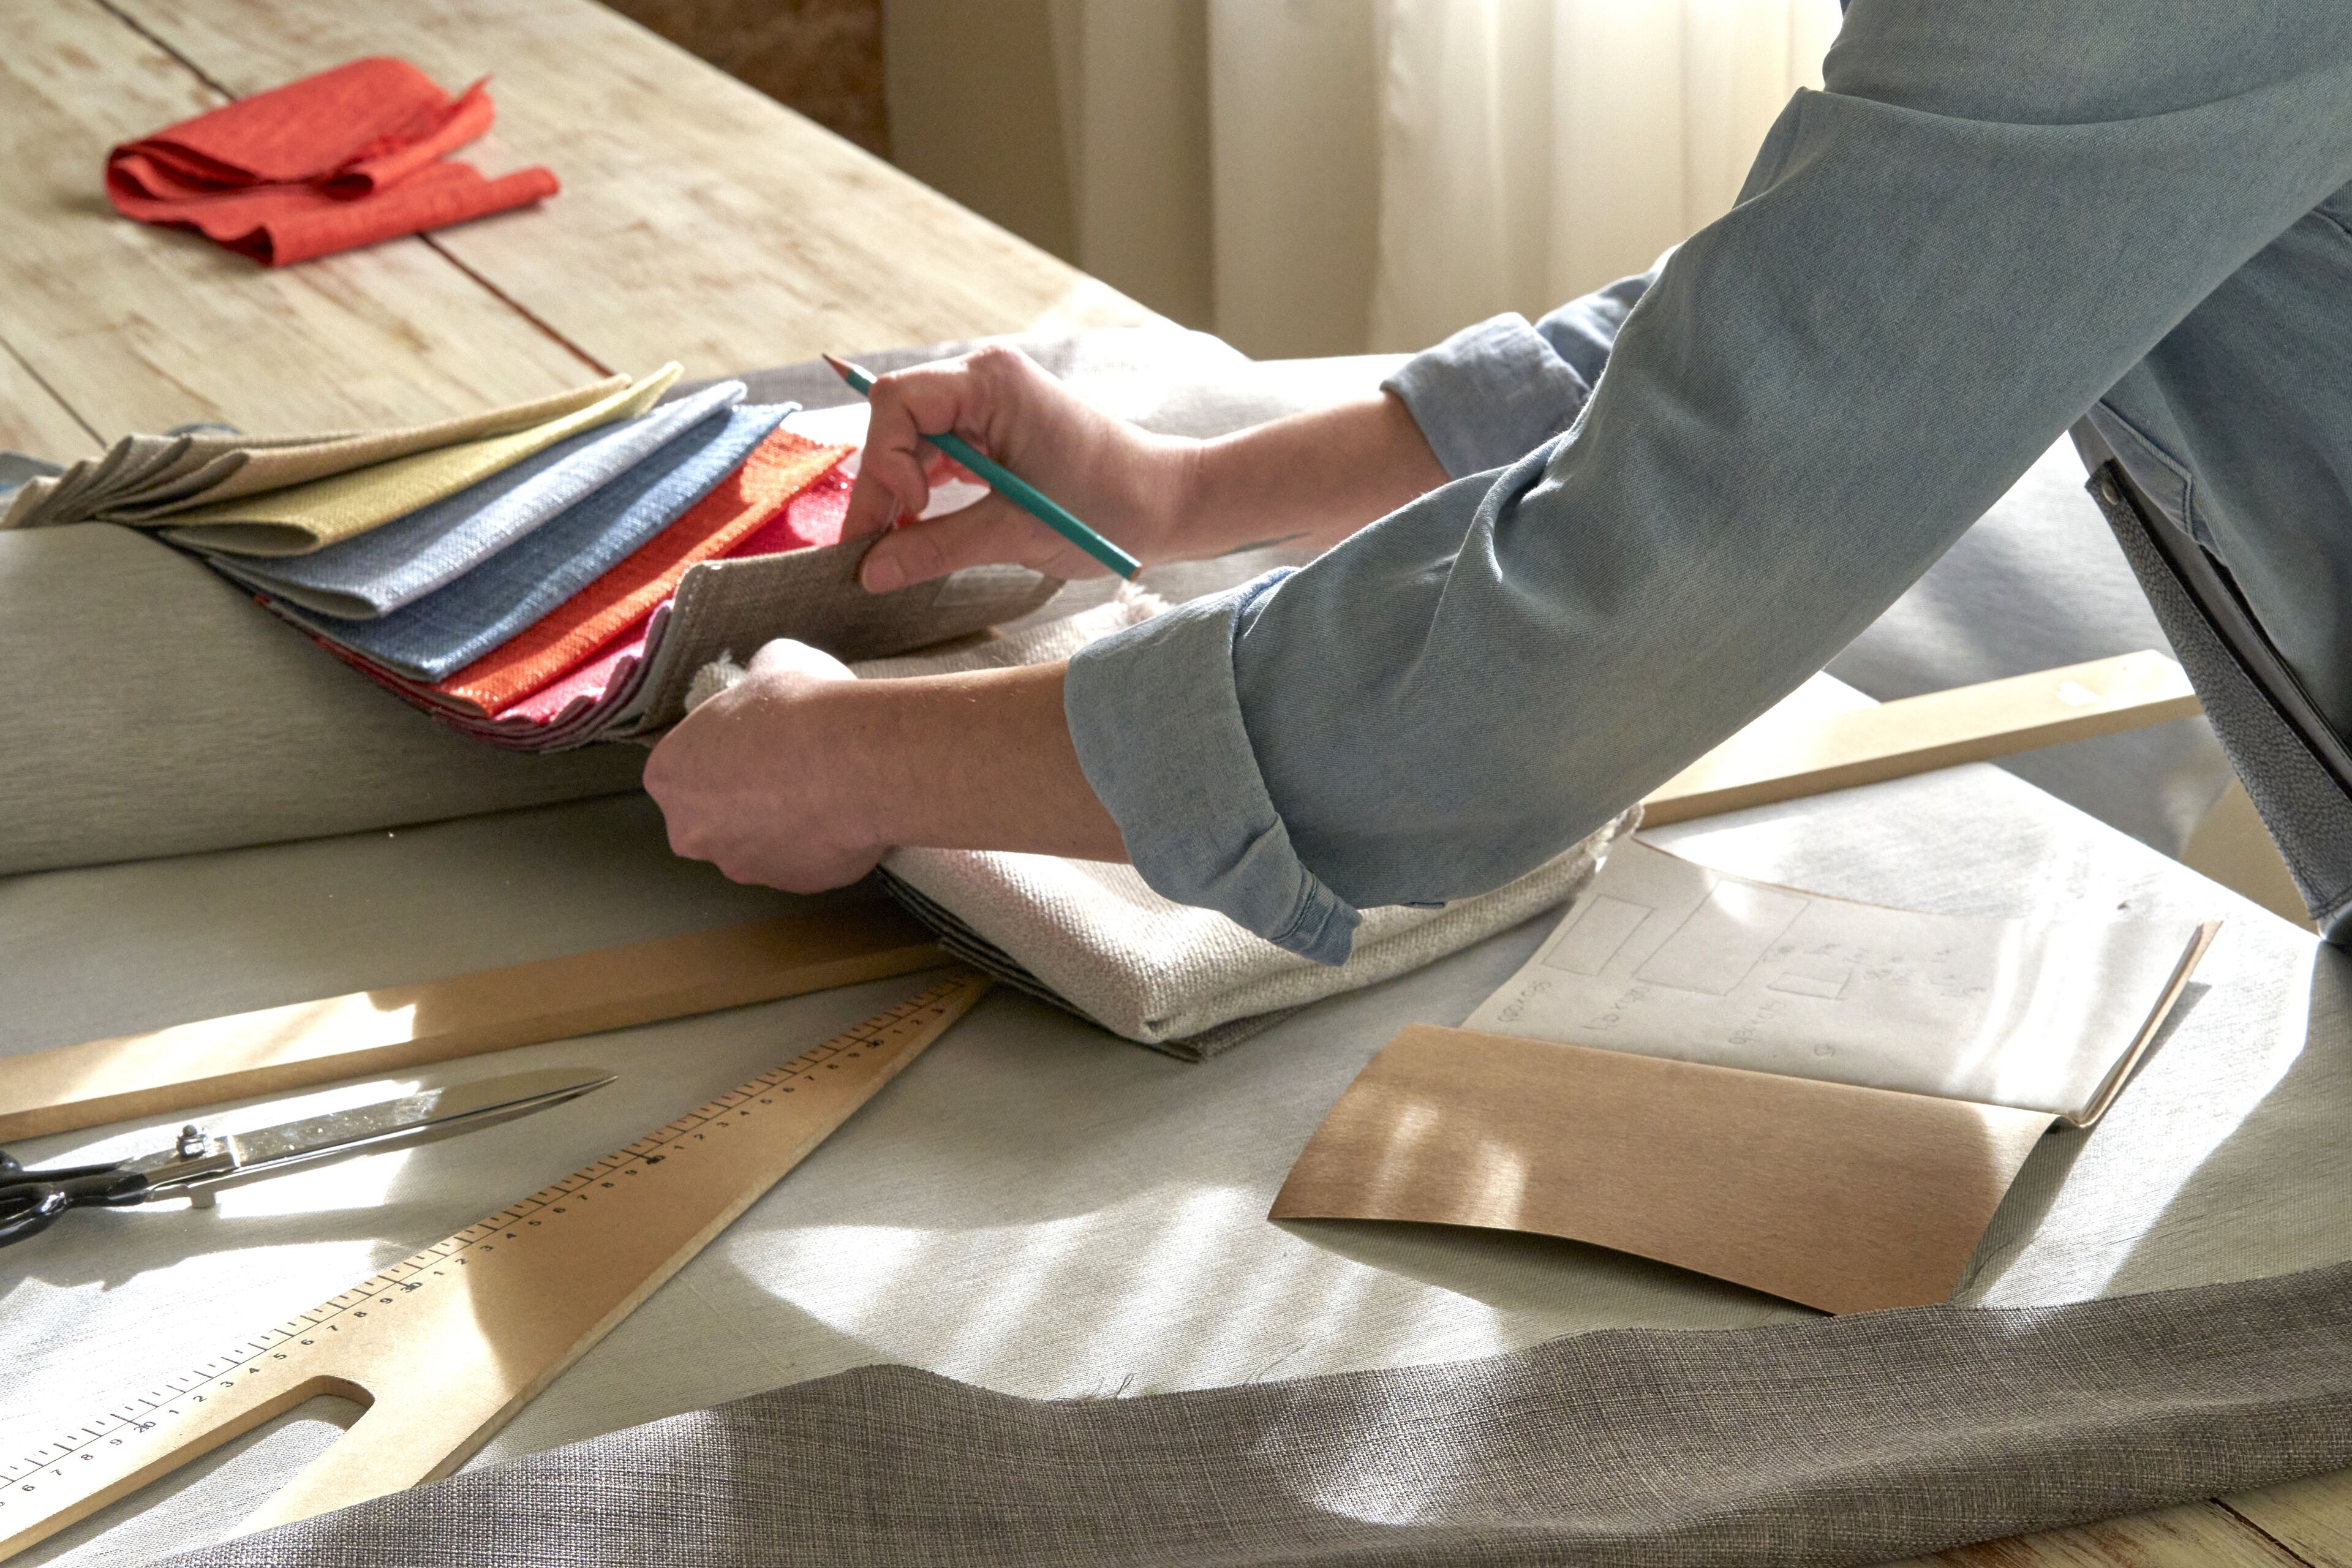 Une personne choisit méticuleusement des échantillons de tissu pour la couture, avec des outils de mesure et des patrons disposés sur une table en bois, dans un espace de travail bien éclairé.